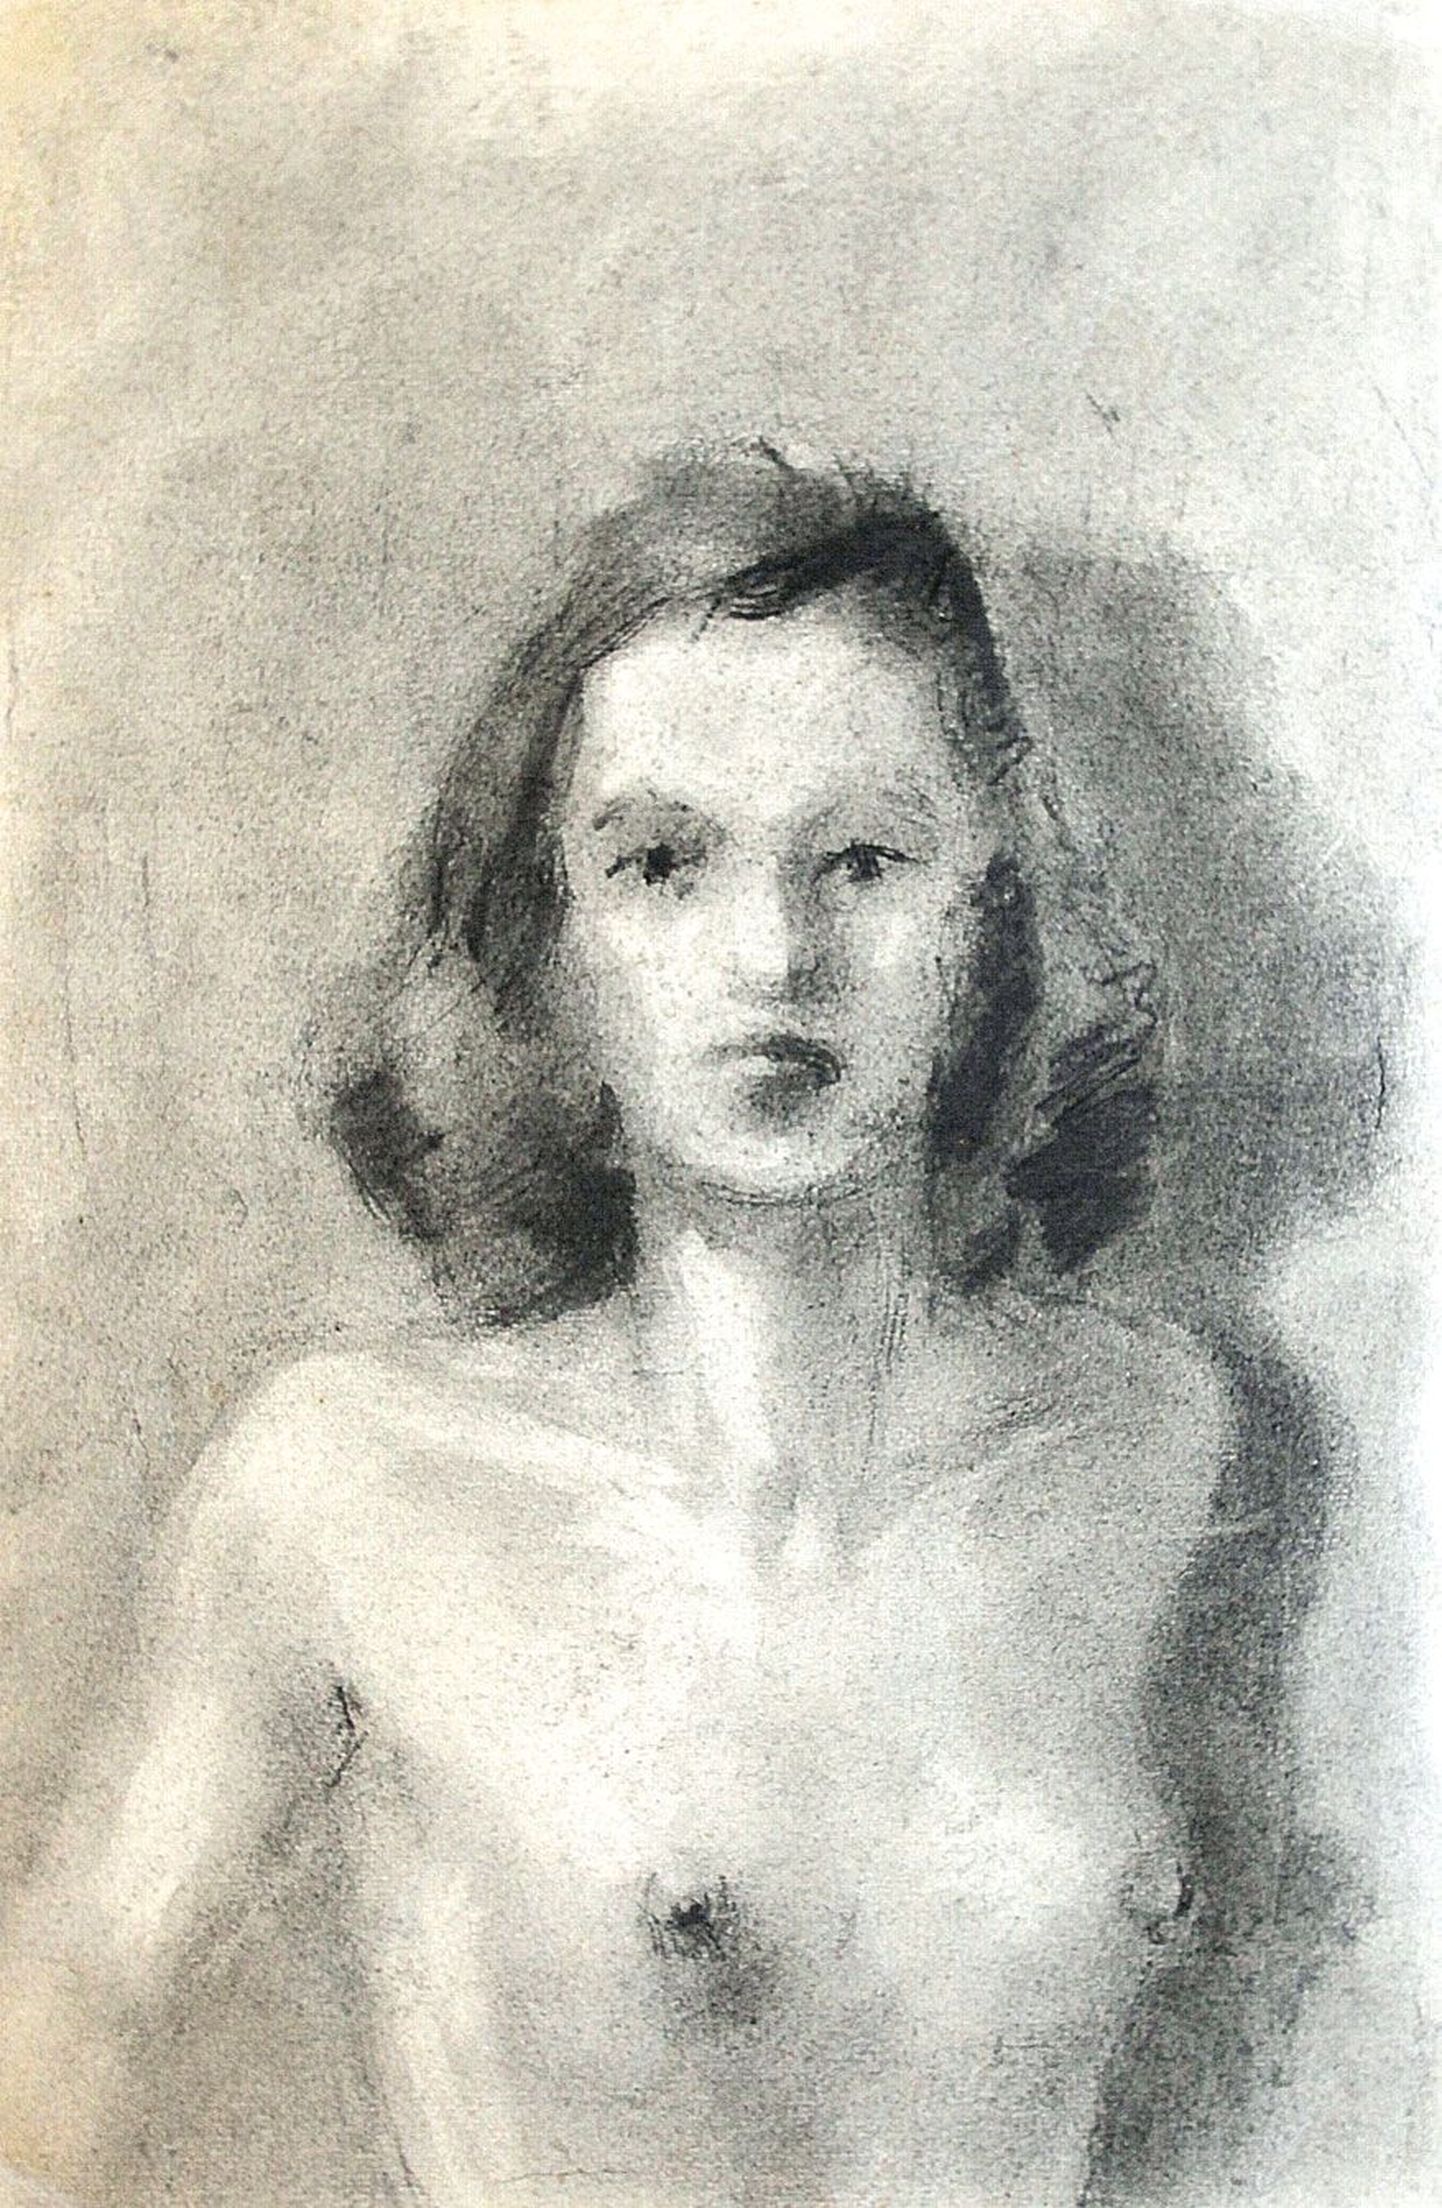 Napilt 20-aastase Viktor Jõgeveri poolaktil 1940. aastatest (süsi, pa­ber) on kujutatud 18-aastane Silvia Jõgever.